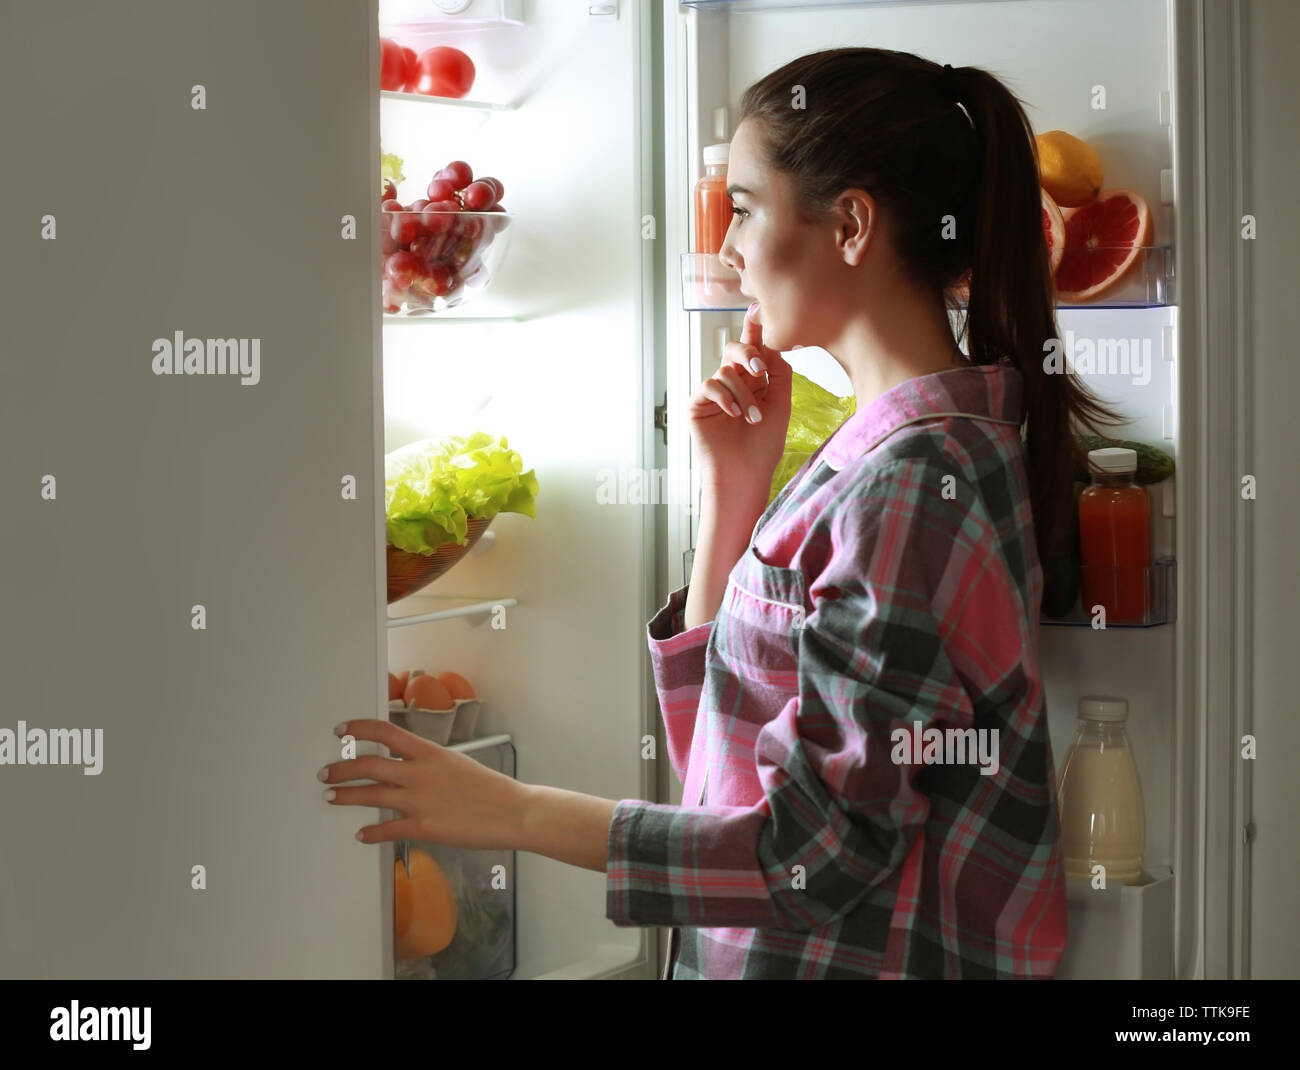 Вечером сильно хочется есть. Девочка у холодильника. Ужин перед сном. Заглядывая в холодильник. Ночной перекус.